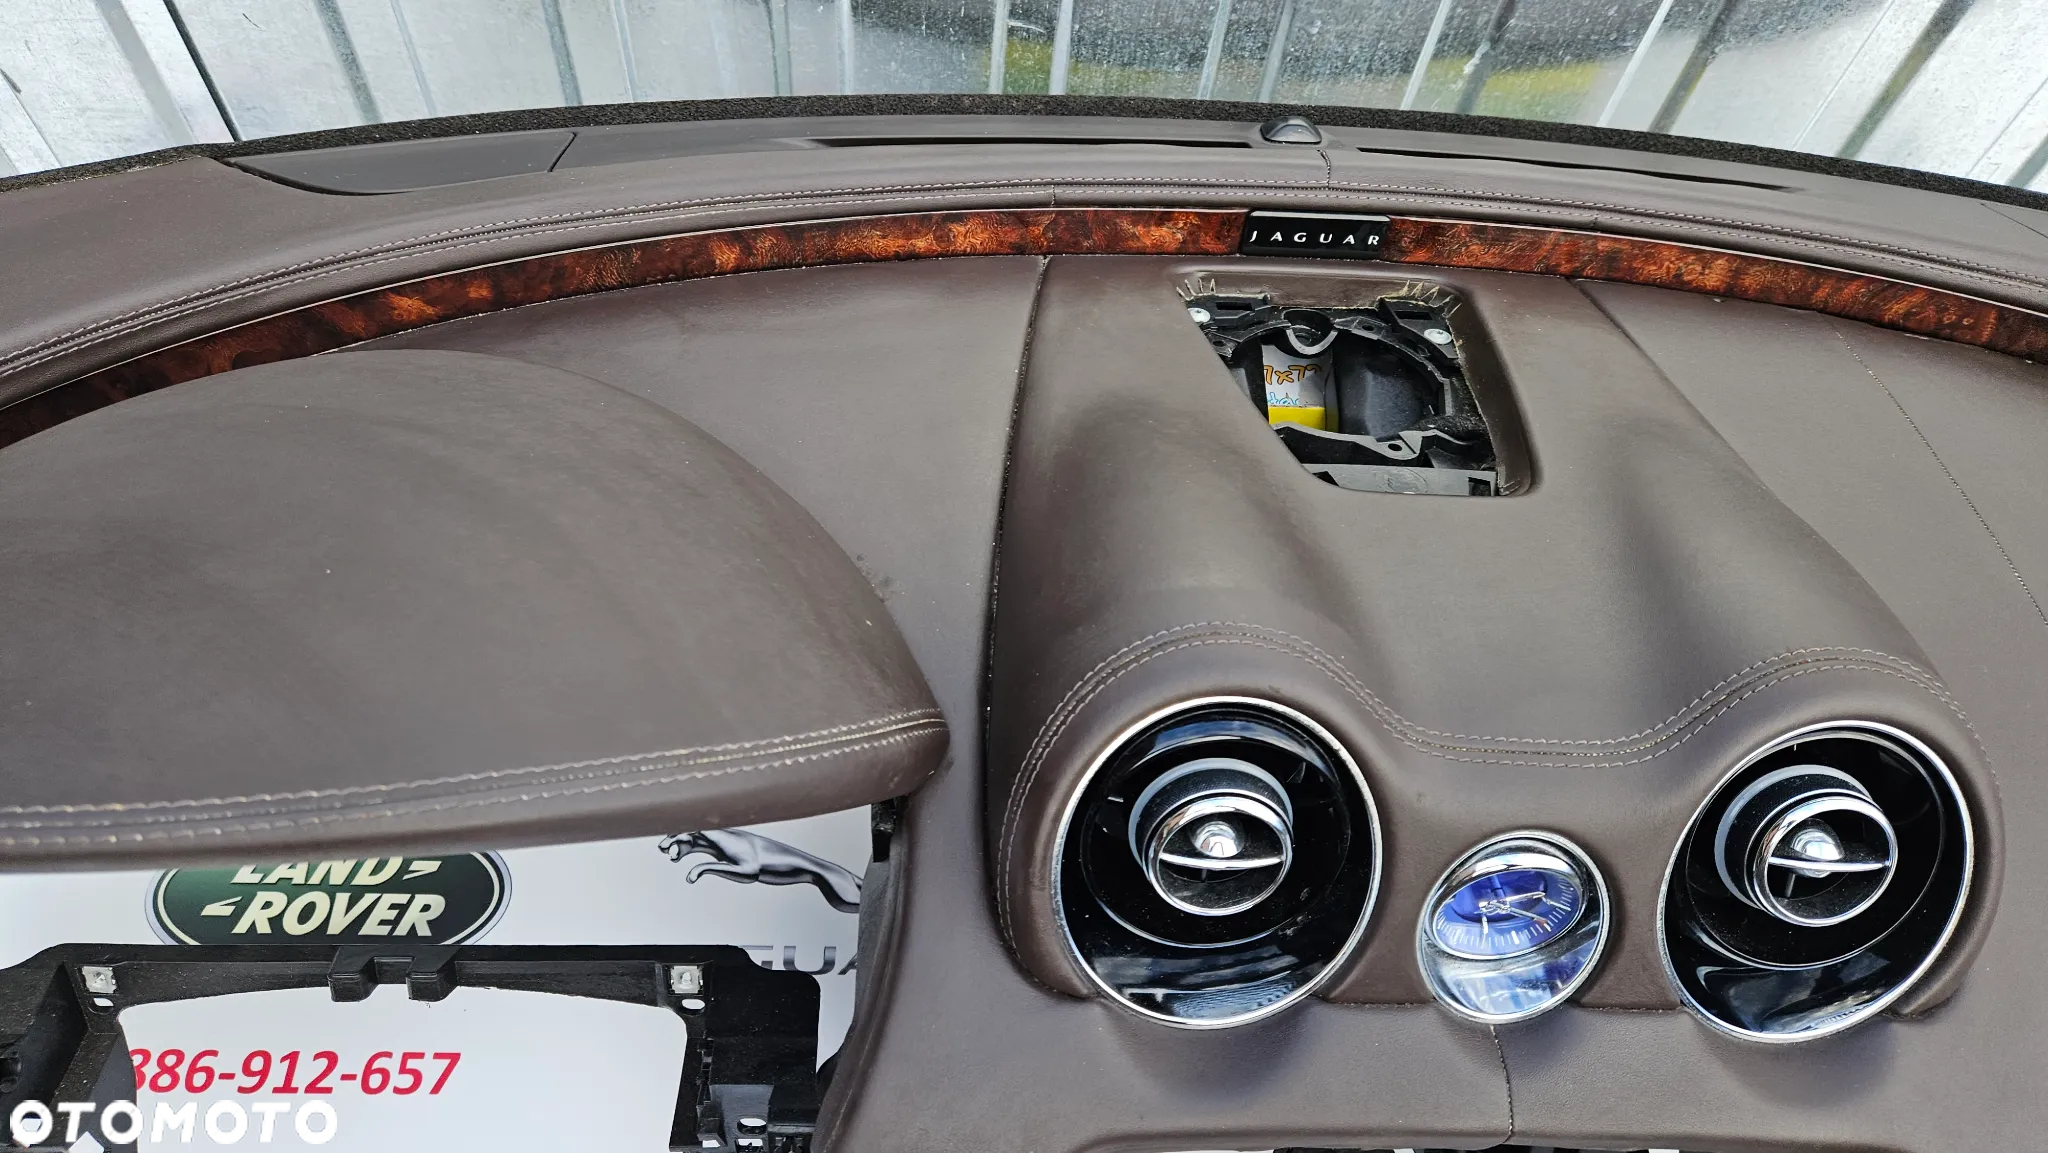 Jaguar XJ 351 2010-2015  Deska Kokpit Konsola z poduszkami oraz sensorem Airbag Poduszki Napinacze - 16